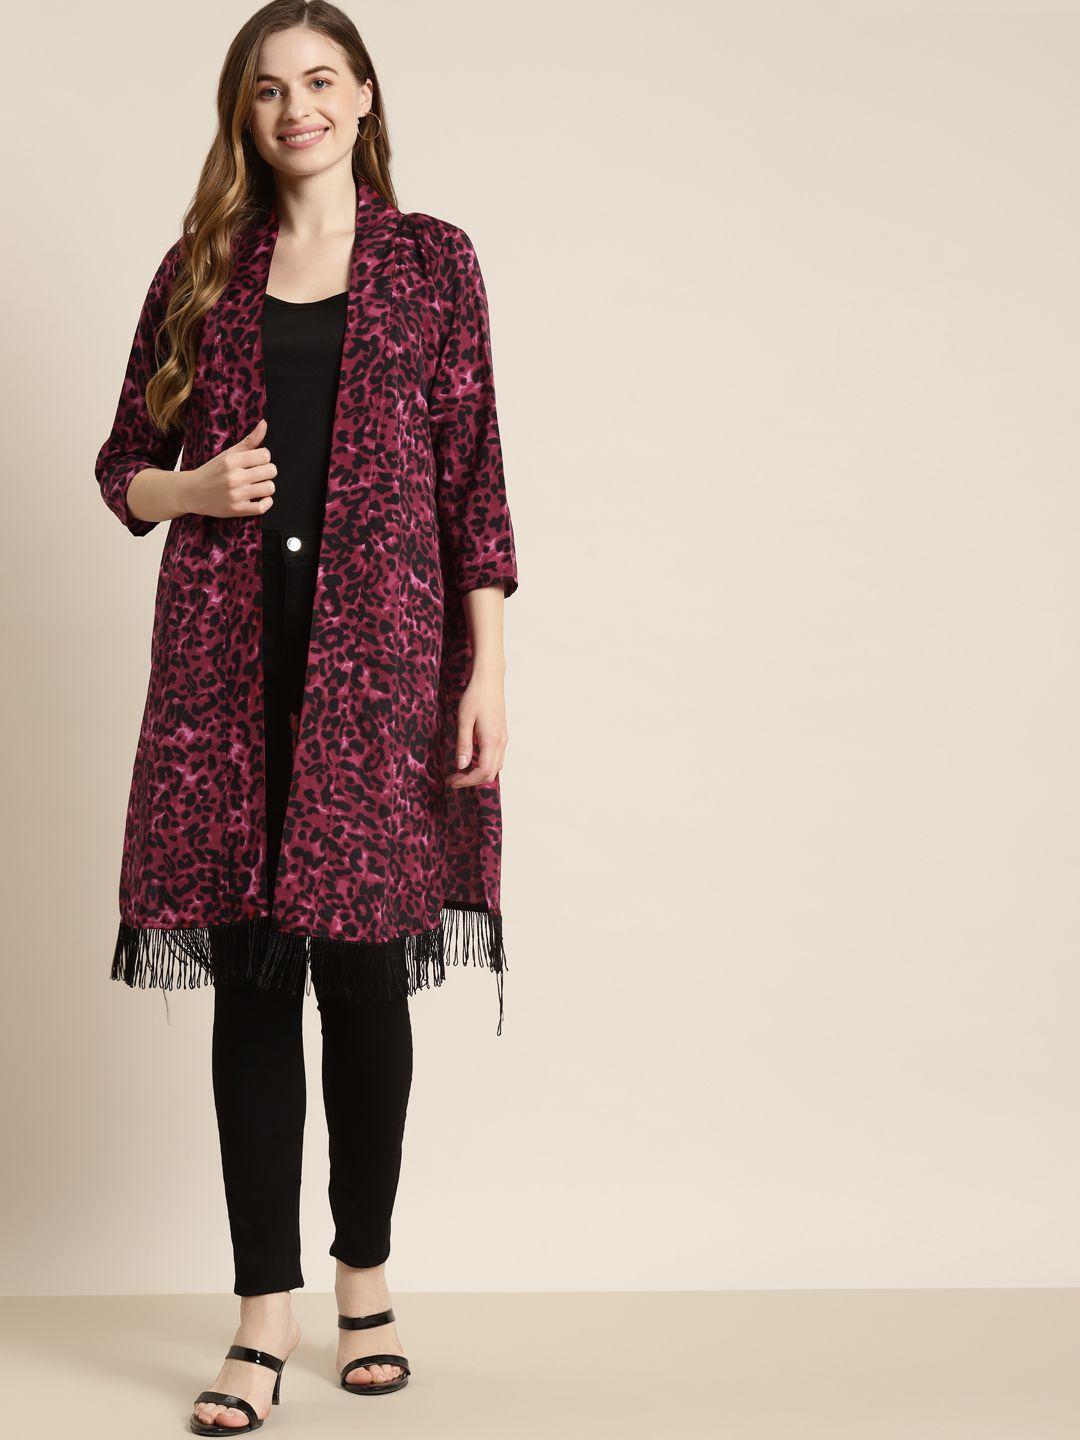 qurvii women burgundy & black leopard print longline shrug with fringes